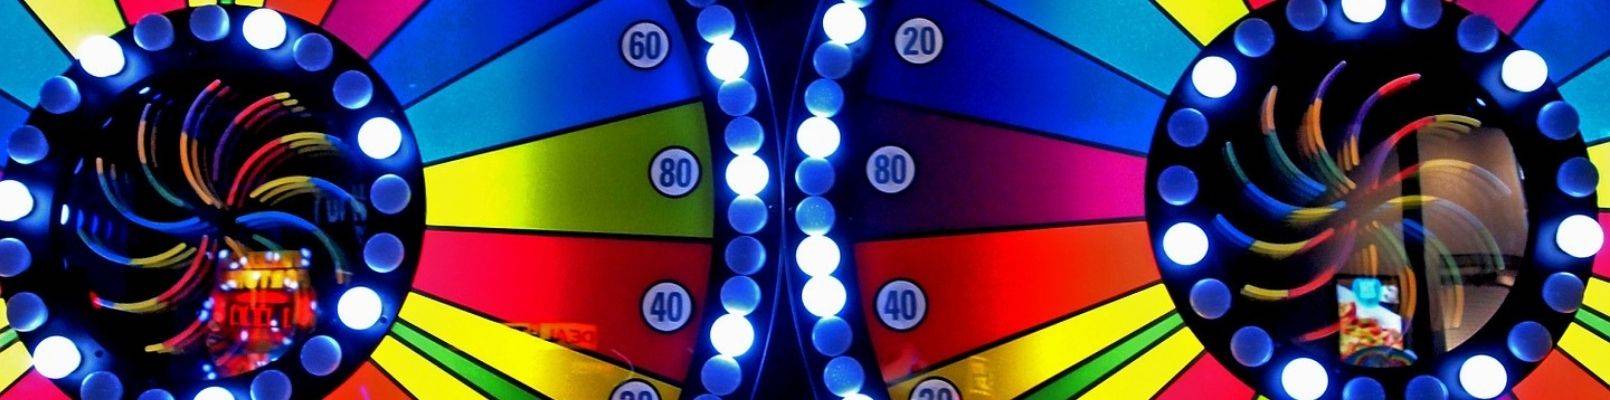 Câștiguri La Sloturi Online | Cazinouri online străine 2020